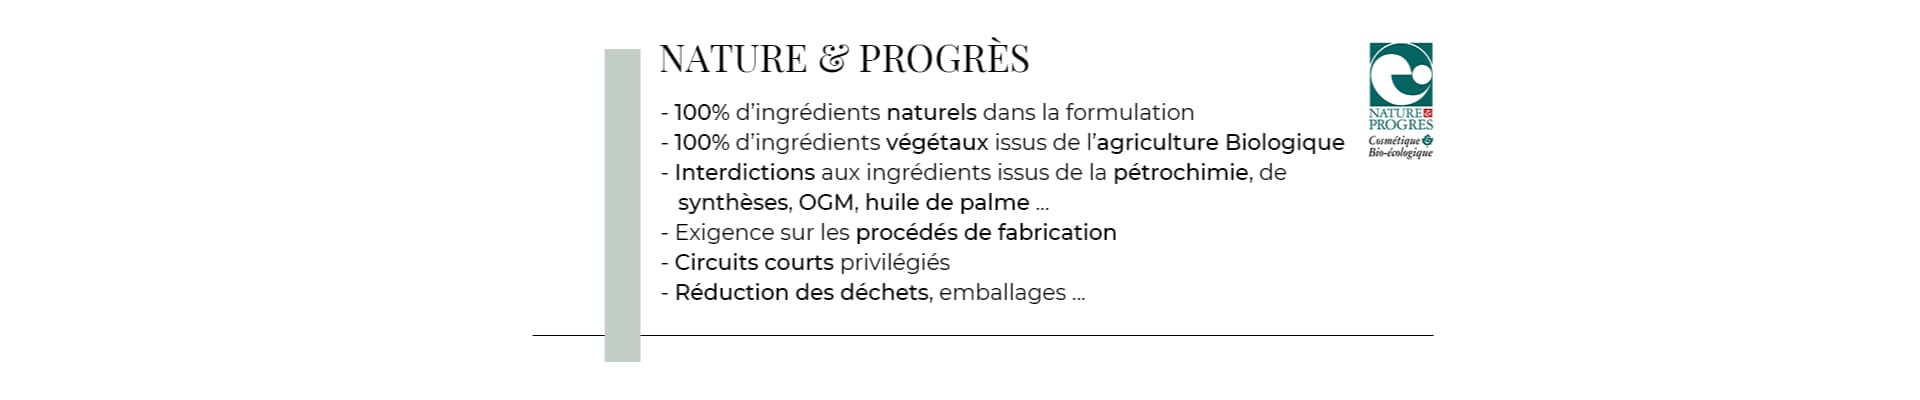 Certification Nature & Progrès pour des cosmétiques naturels et biologiques